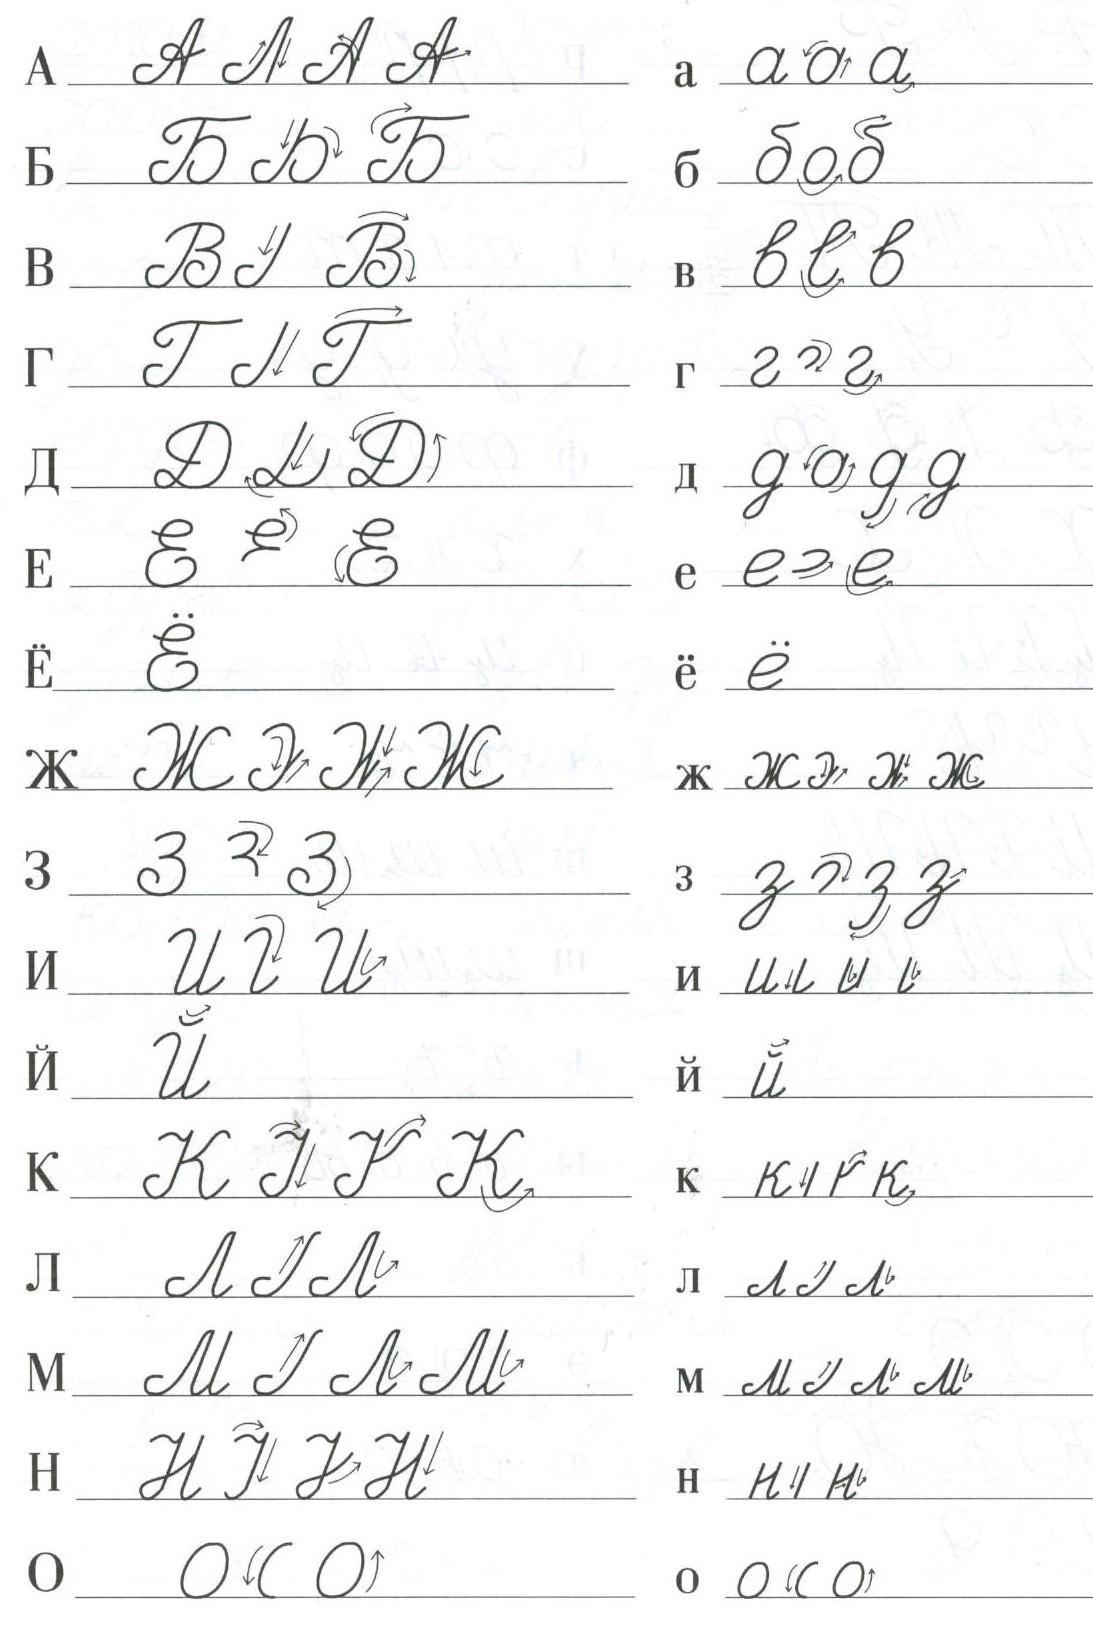 Blatt 1. Korrektes Schreiben von handgeschriebenen russischen Buchstaben.